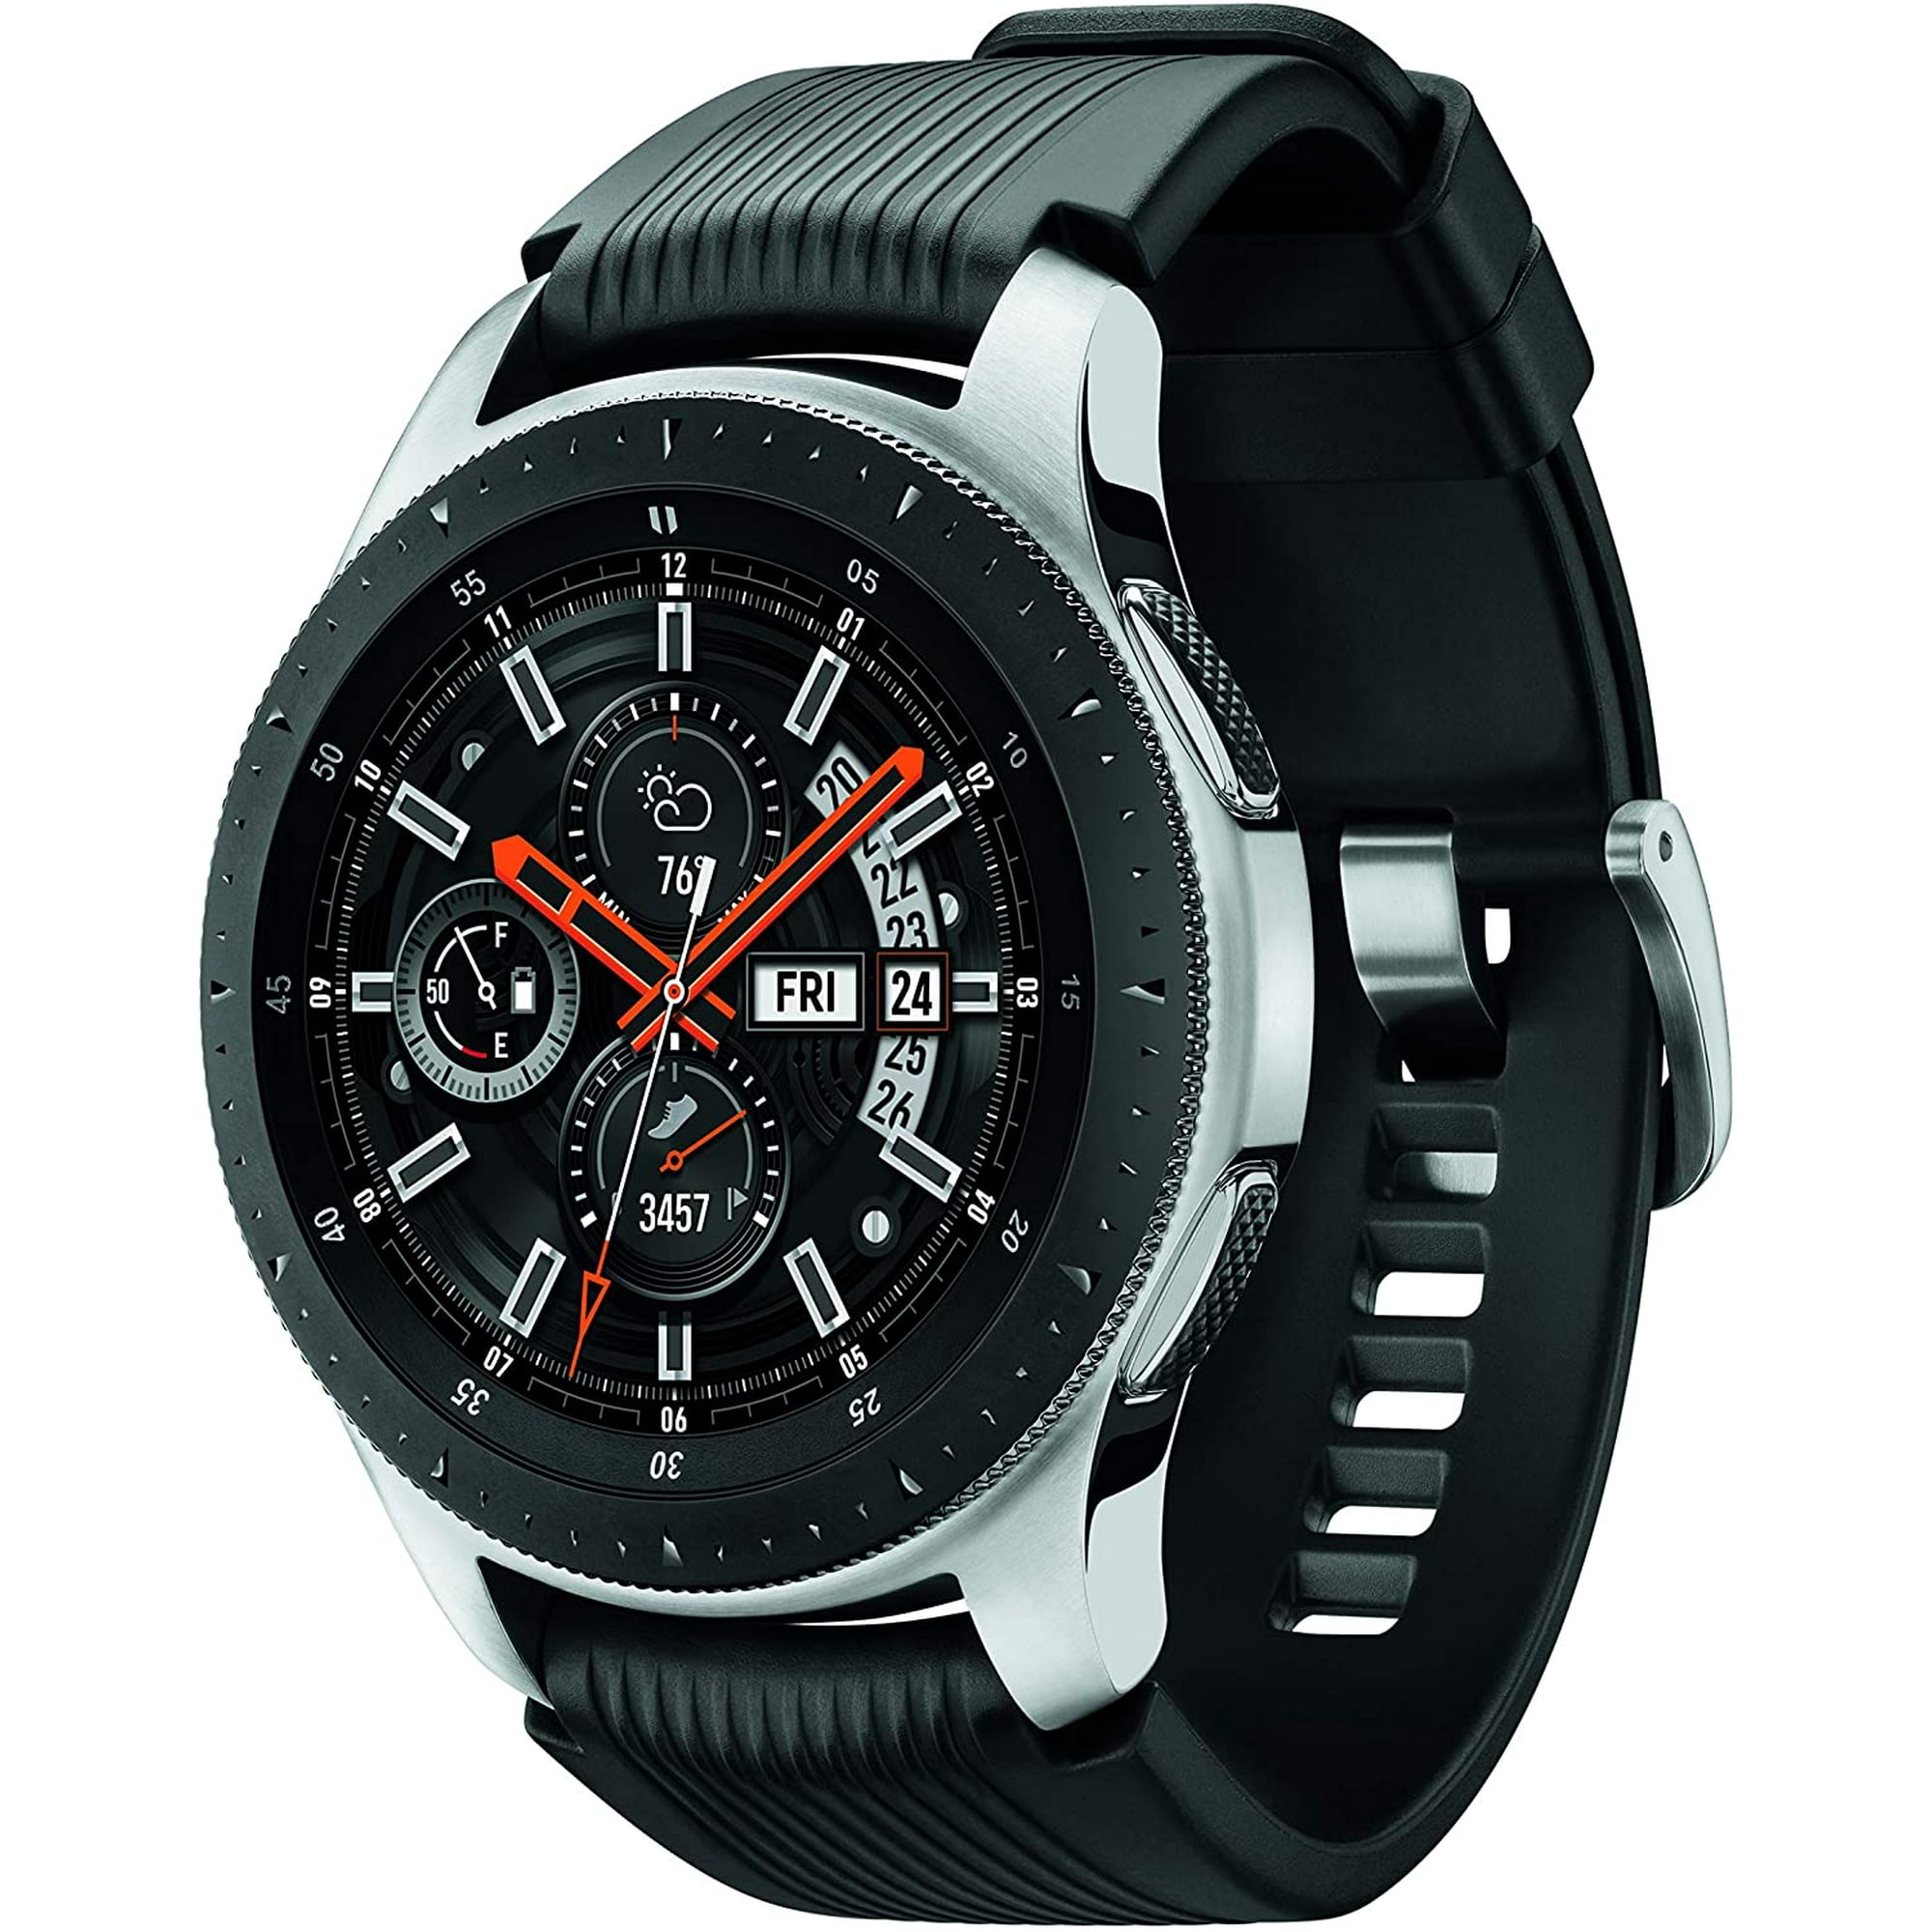 Samsung Galaxy Watch (46mm, GPS, Bluetooth) – Silver/Black